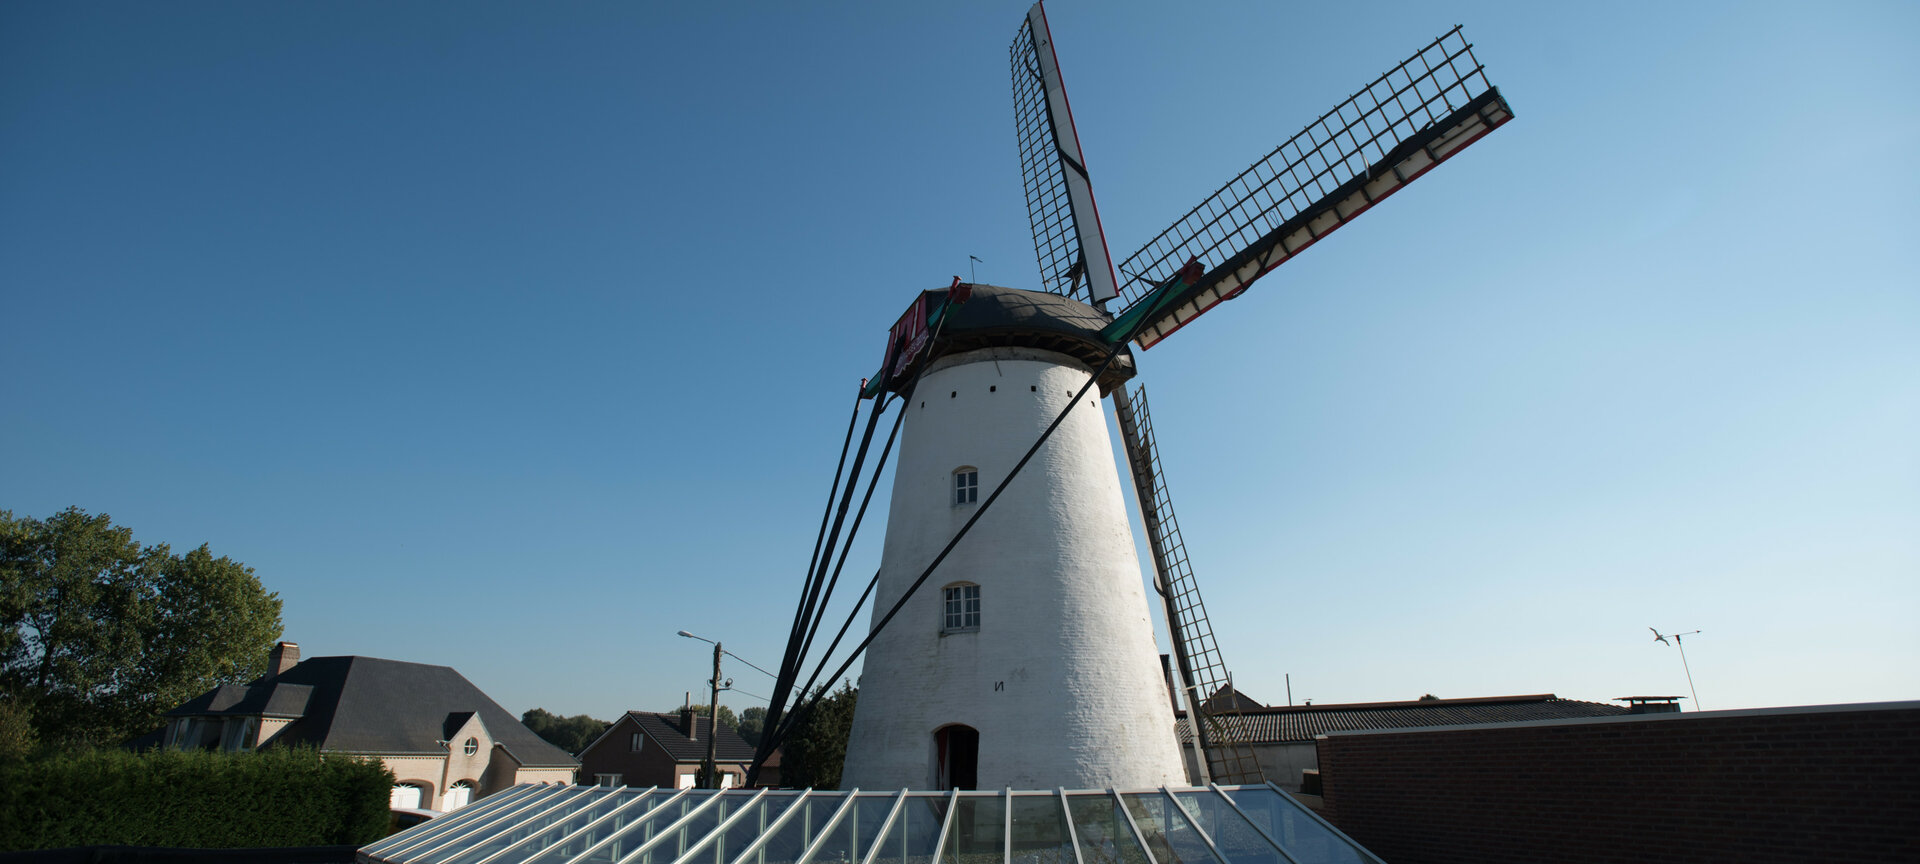 Molen 'De Stormvogel' - Wind Mill outside 2